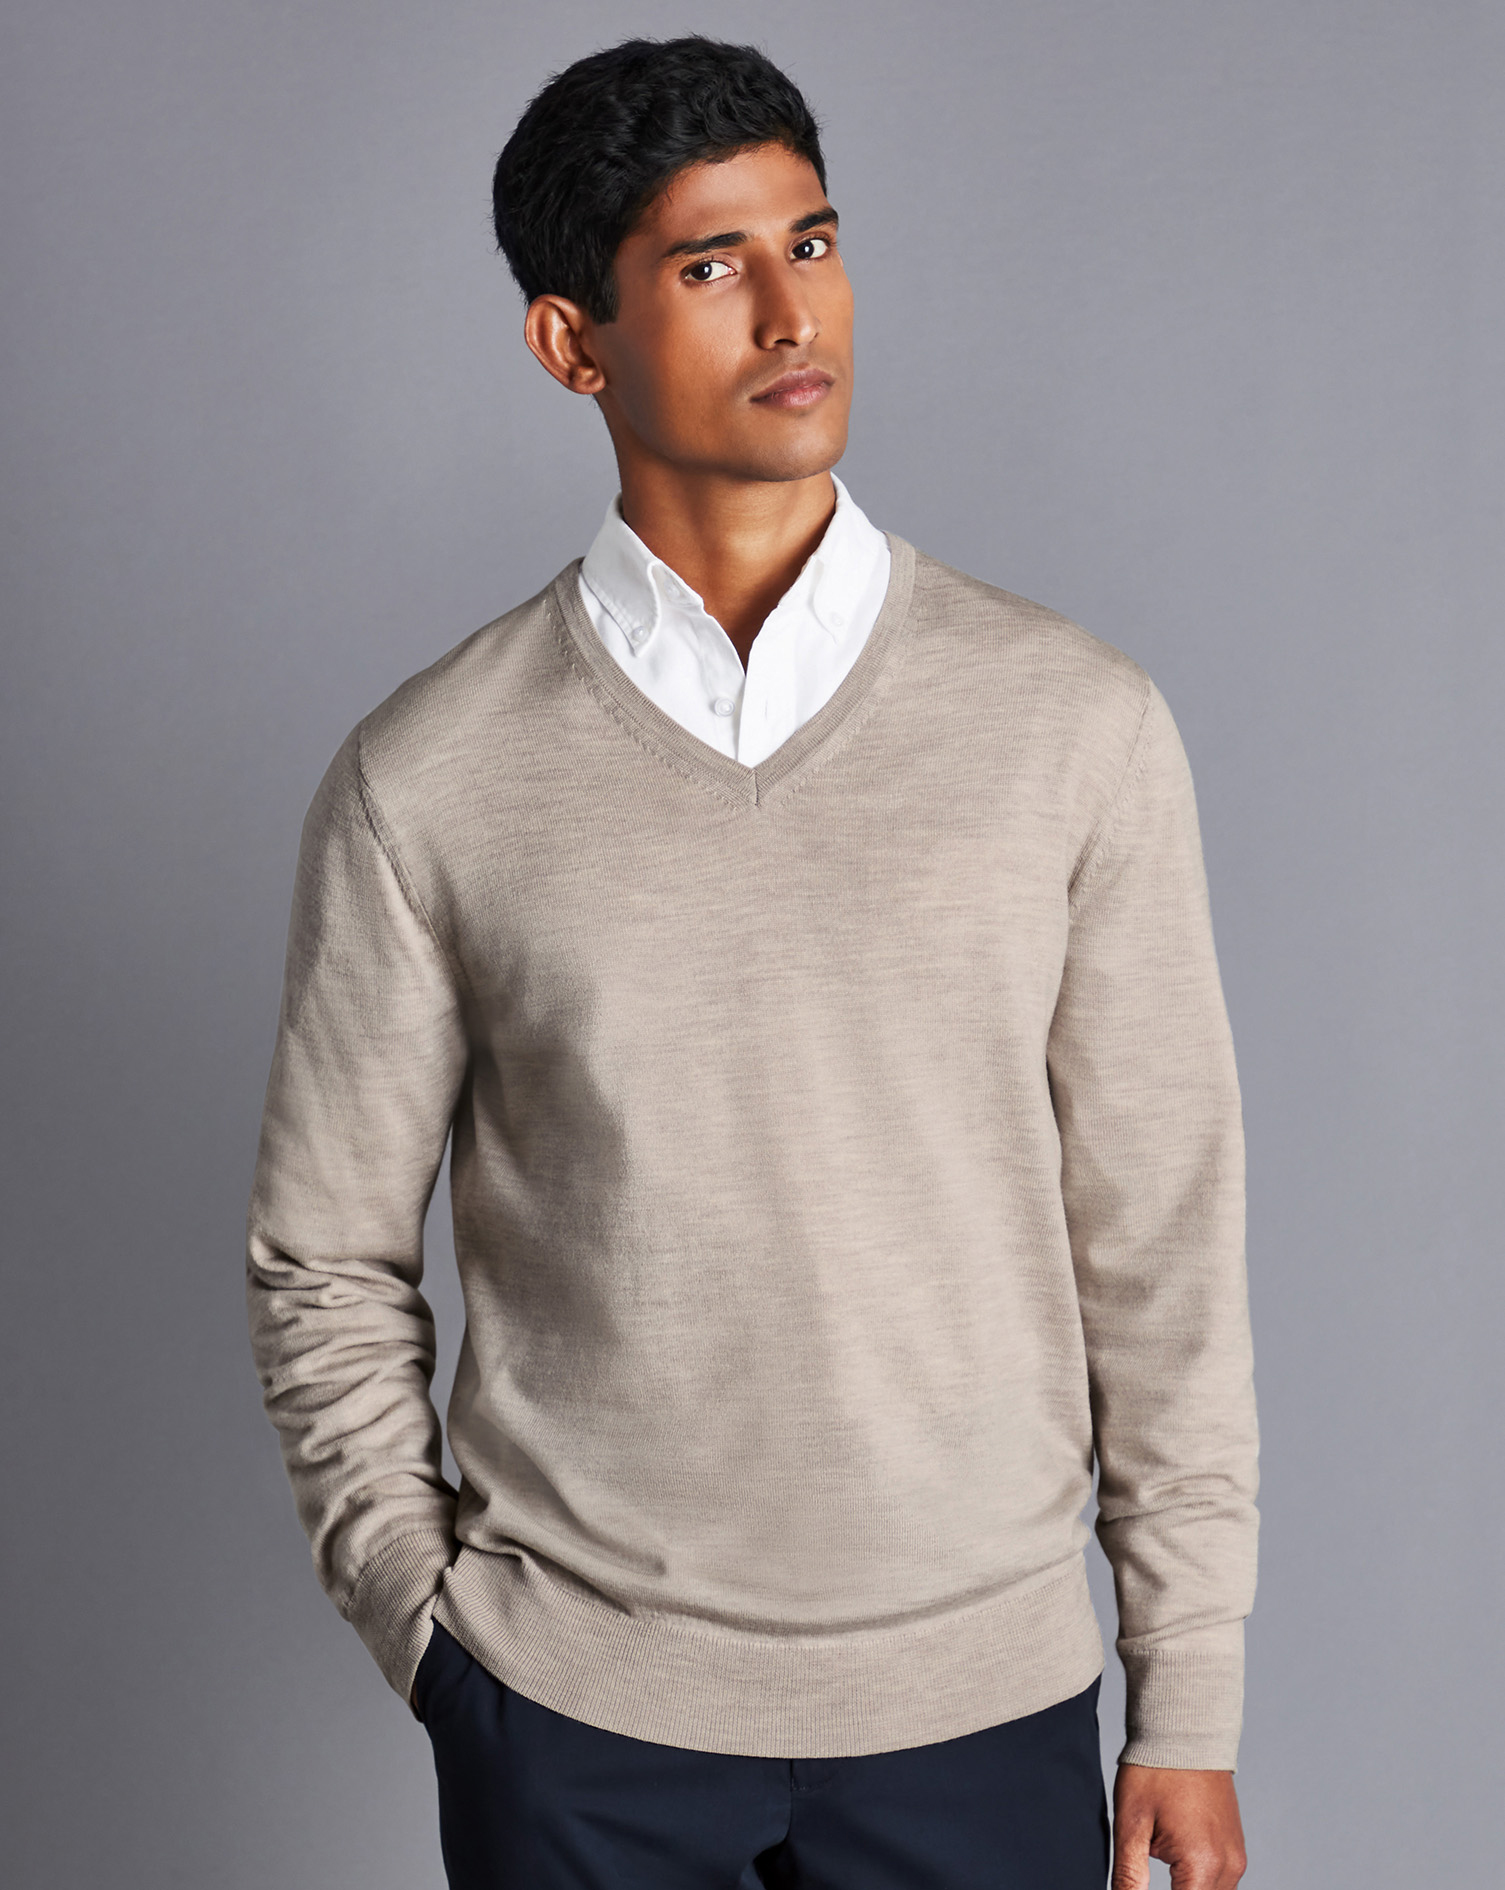 Men's Charles Tyrwhitt Merino V-Neck Sweater - Limestone Neutral Size Large Wool
